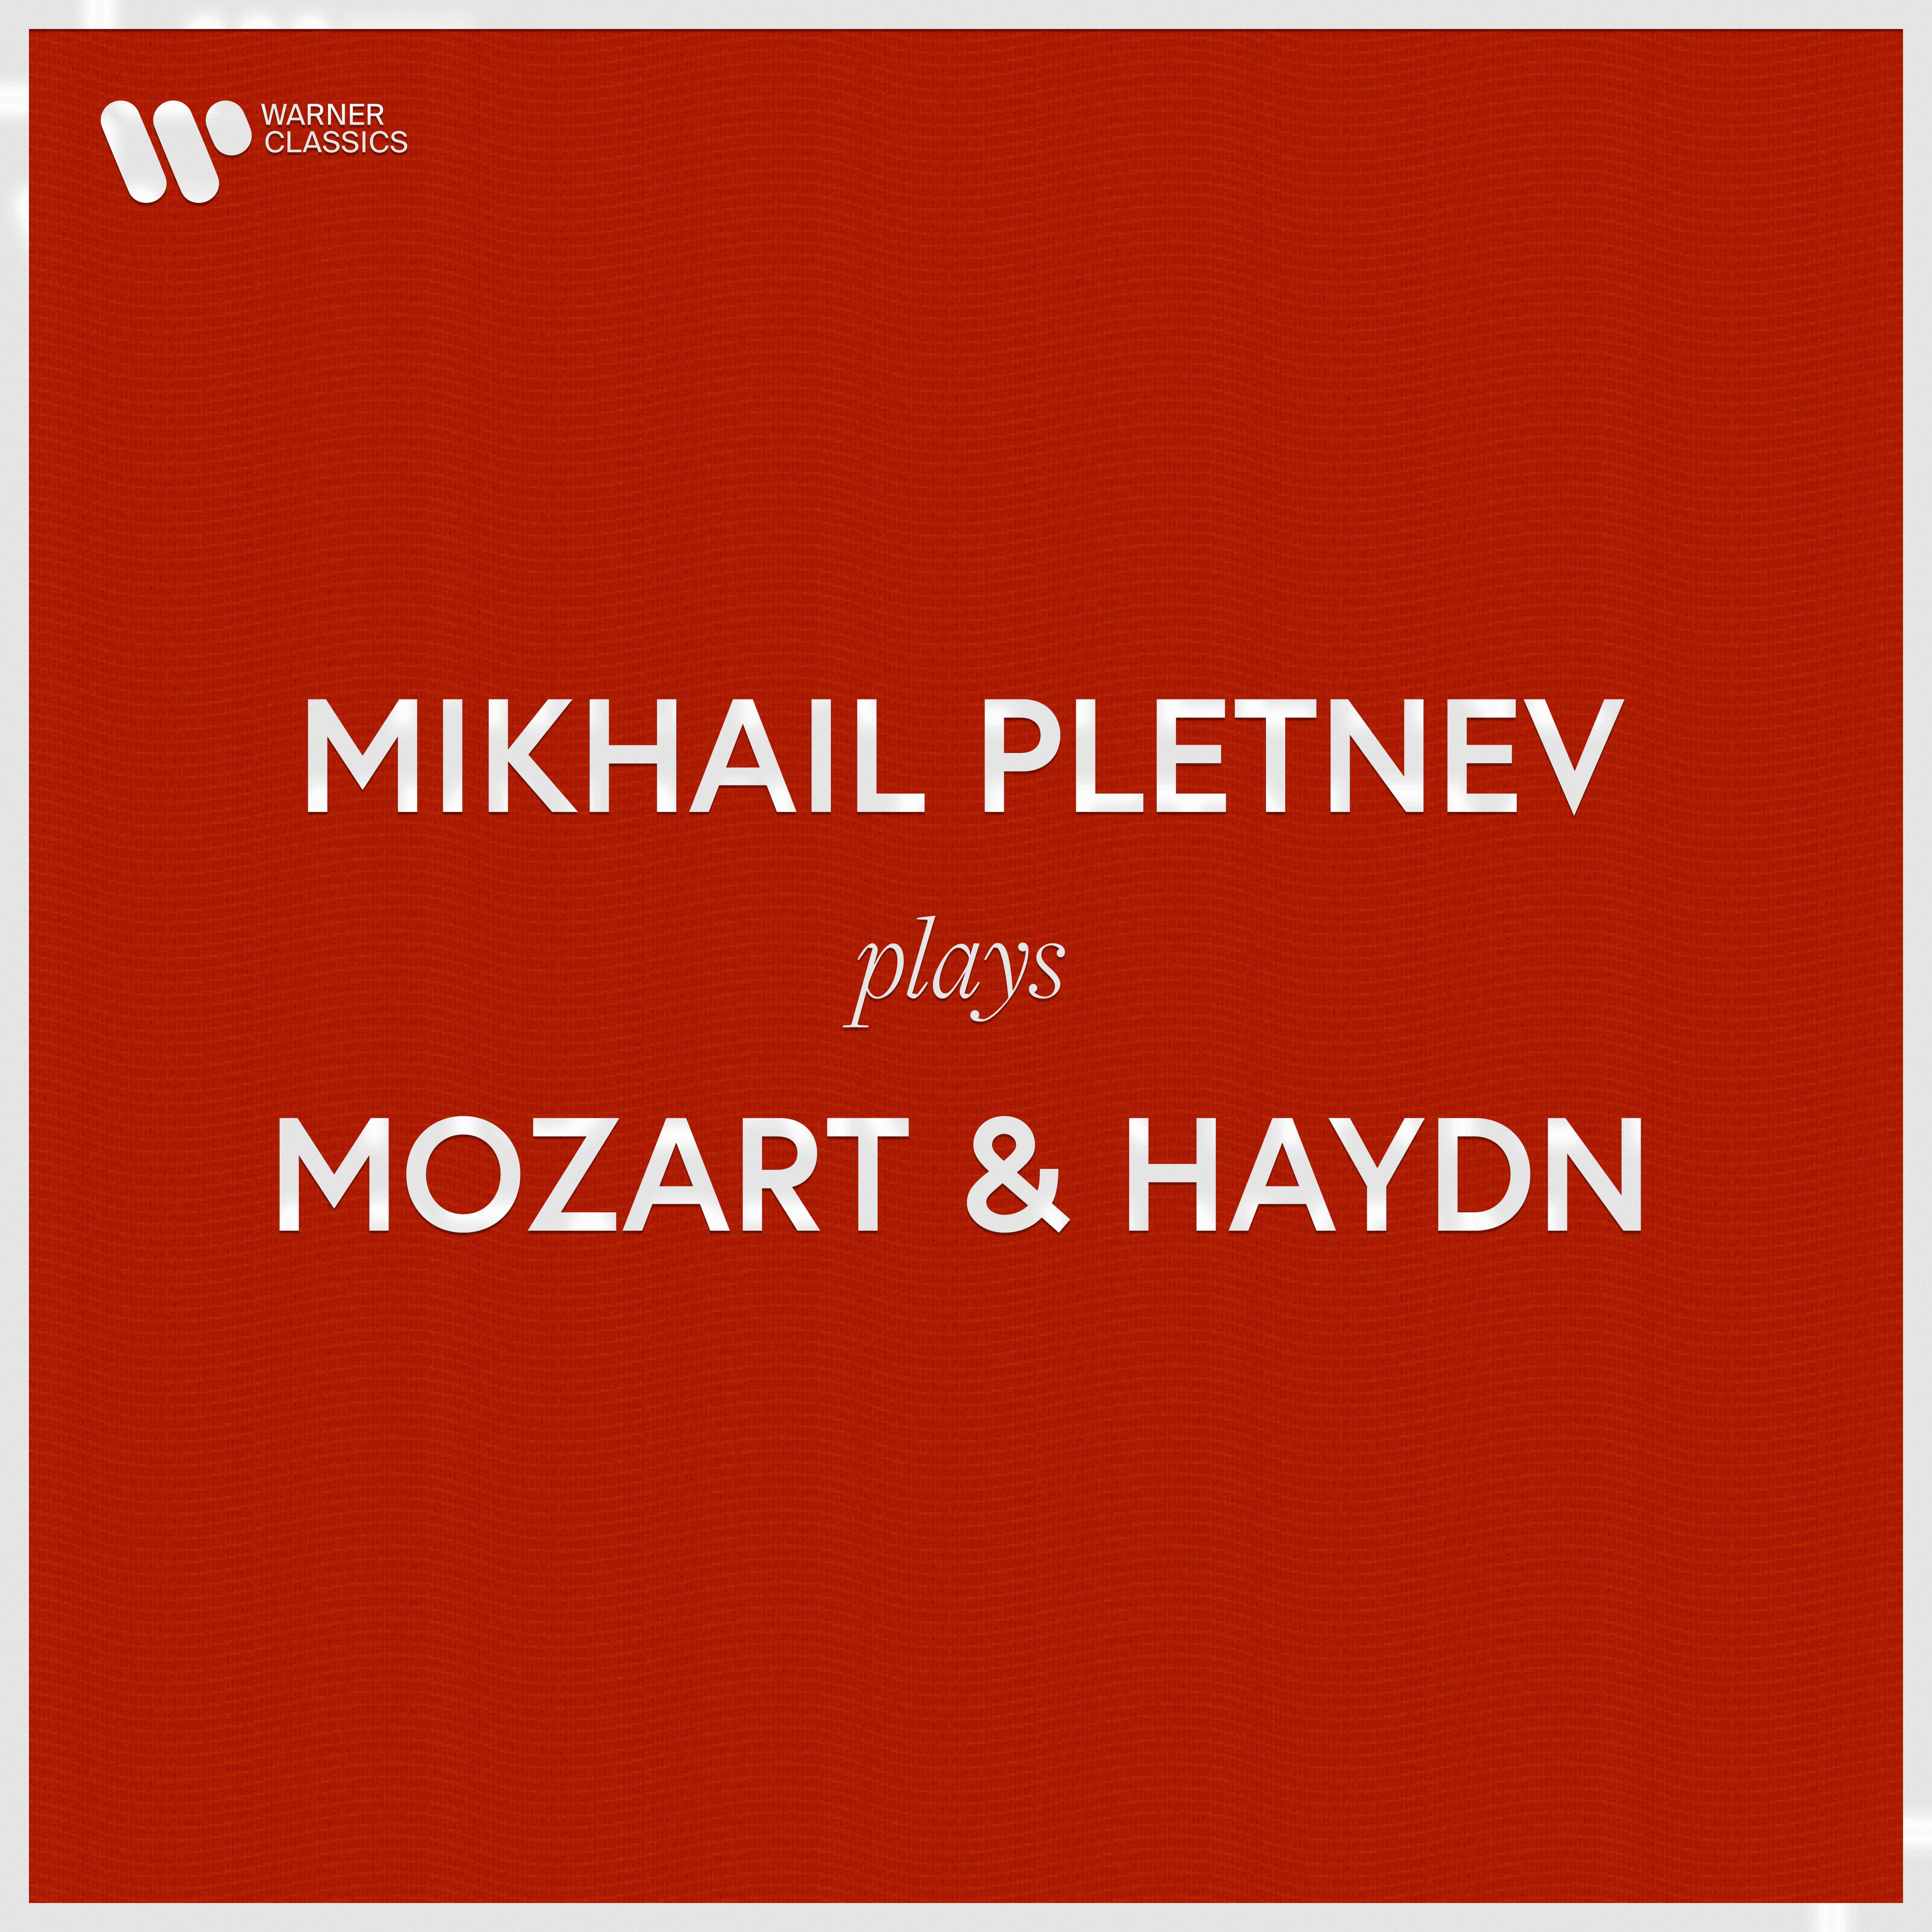 Mikhail Pletnev - Piano Concerto in D Major, Hob. XVIII:11: I. Vivace